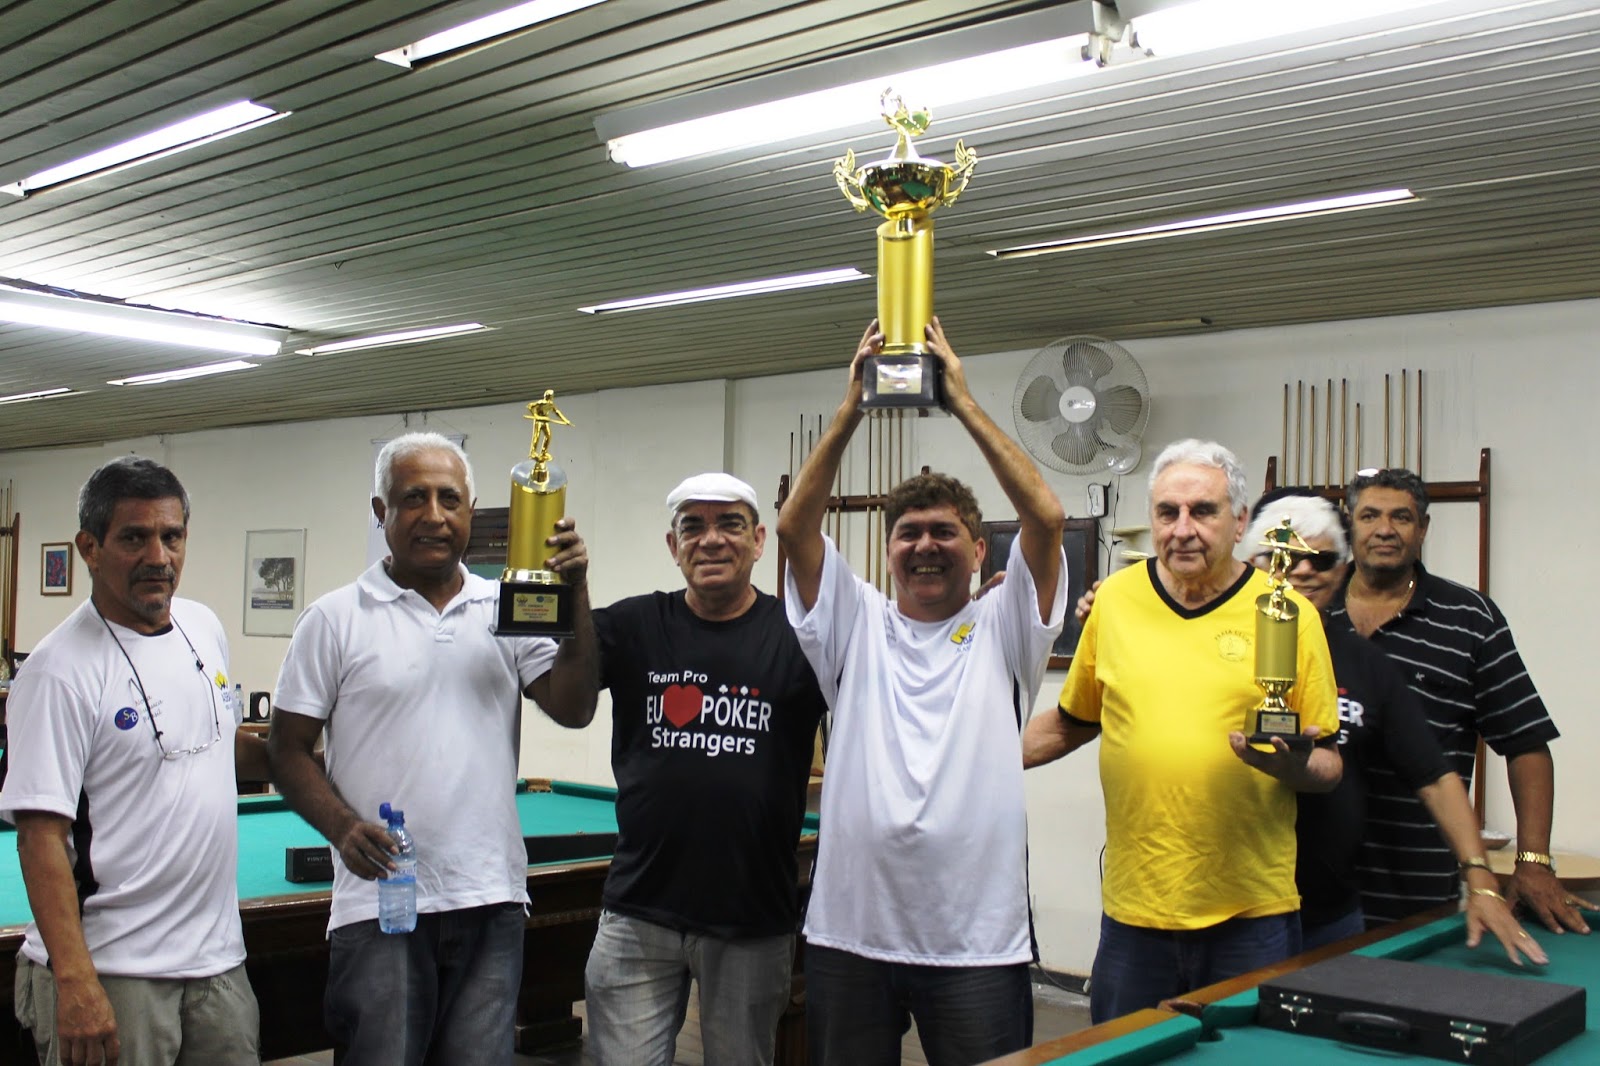 SINUCA DE ITABUNA: XXIII Campeonato Brasileiro de Sinuca continua